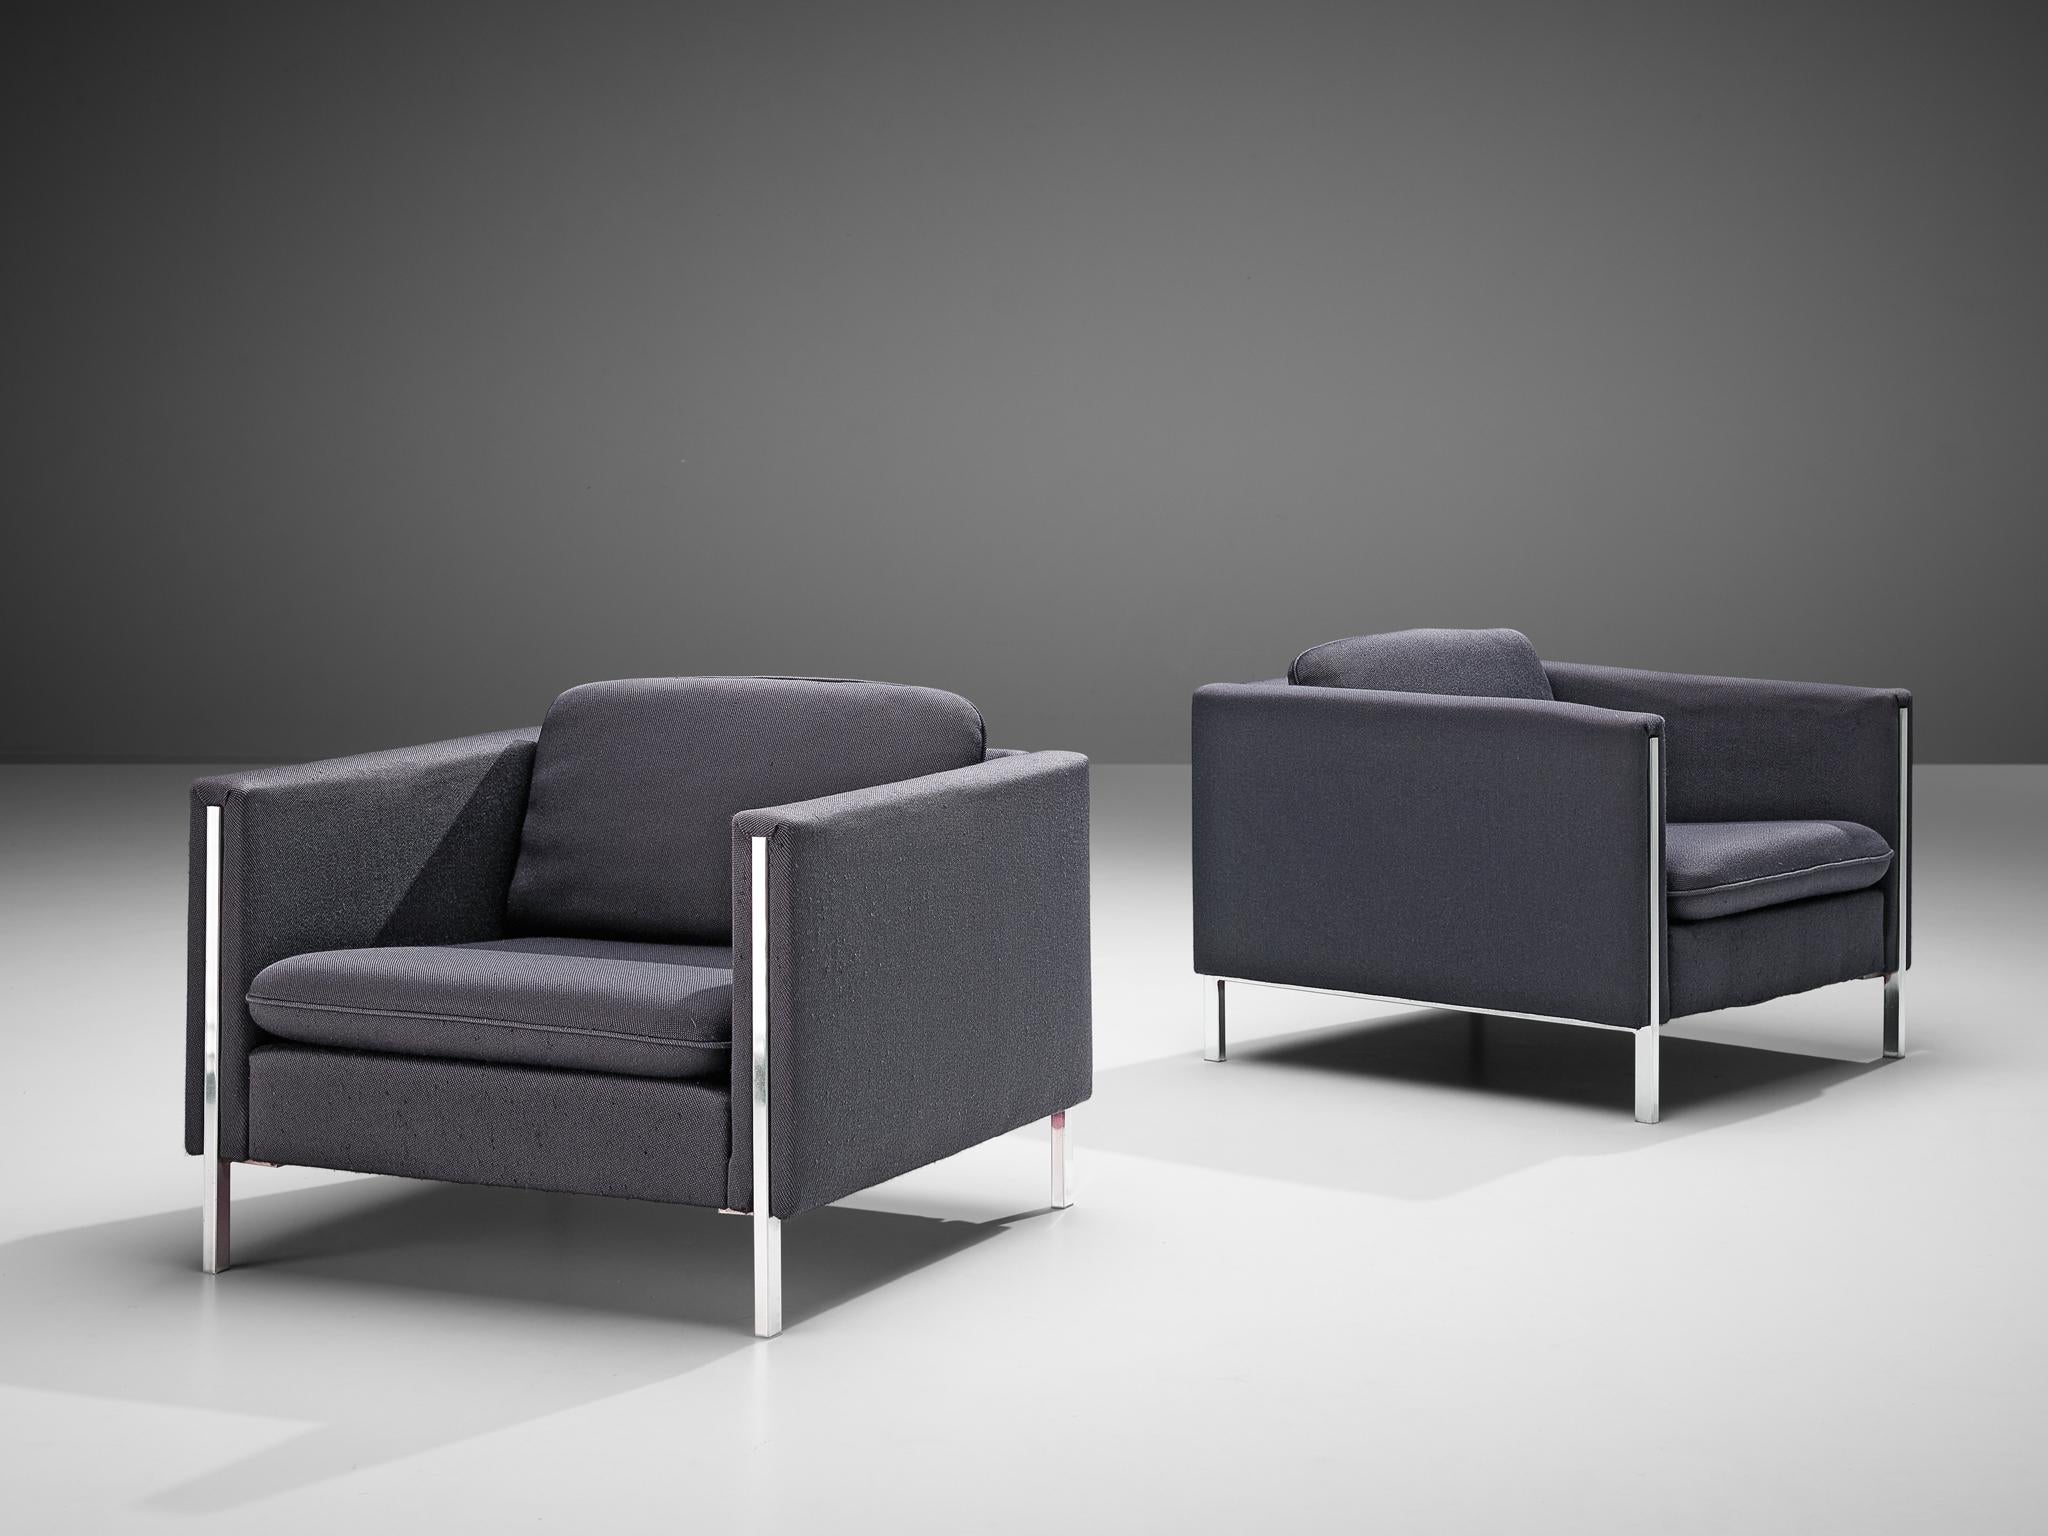 Pierre Paulin pour Artifort, paire de fauteuils, modèle '442/3', tapisserie grise et acier par Pierre Paulin pour Artifort, Pays-Bas, années 1960.

Ces chaises confortables présentent d'élégants détails en acier. La combinaison de l'acier et du